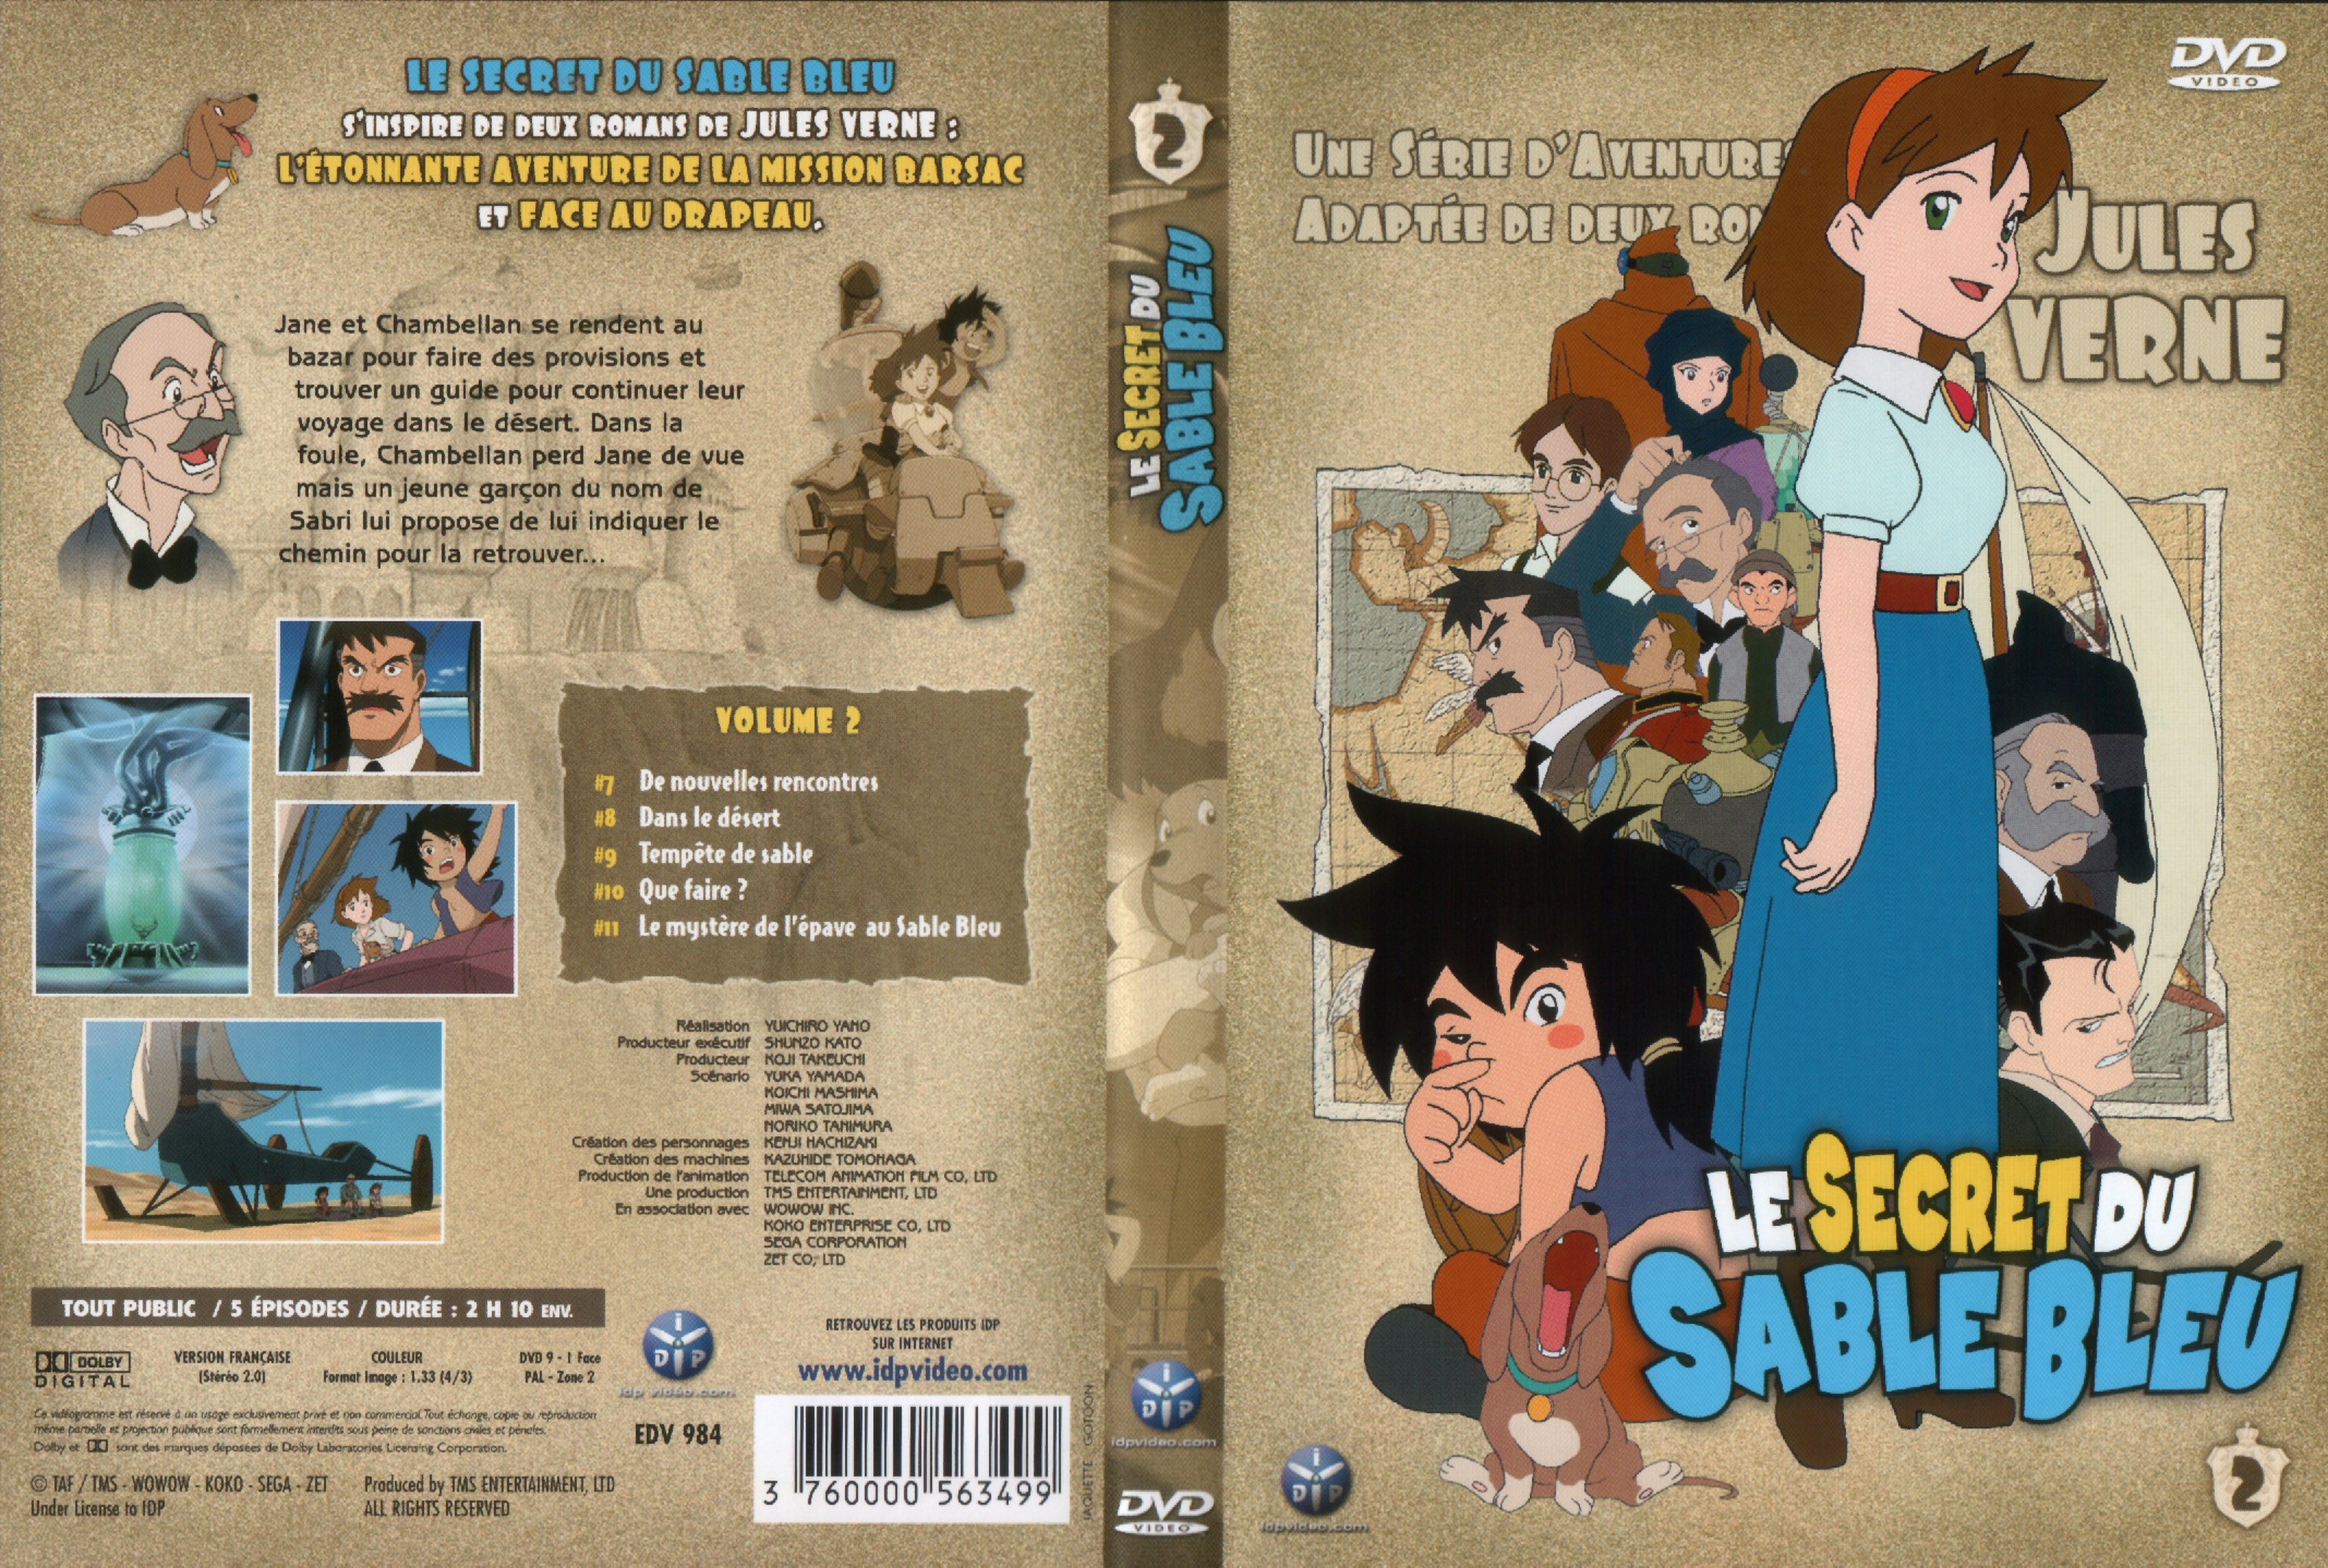 Jaquette DVD Le secret du sable bleu vol 2